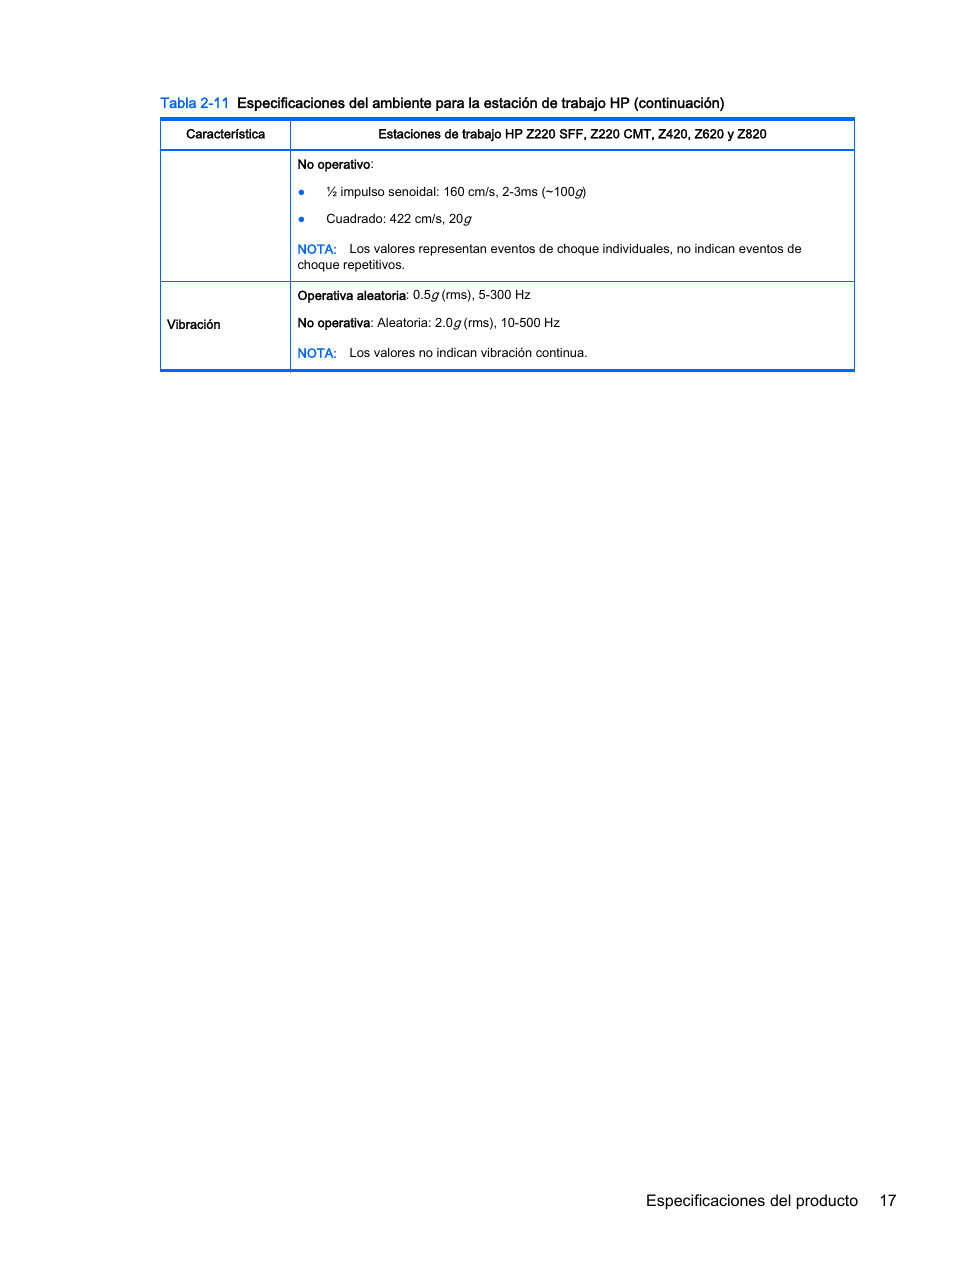 Especificaciones del producto 17 | HP Estación de trabajo HP Z820 Manual del usuario | Página 25 / 61